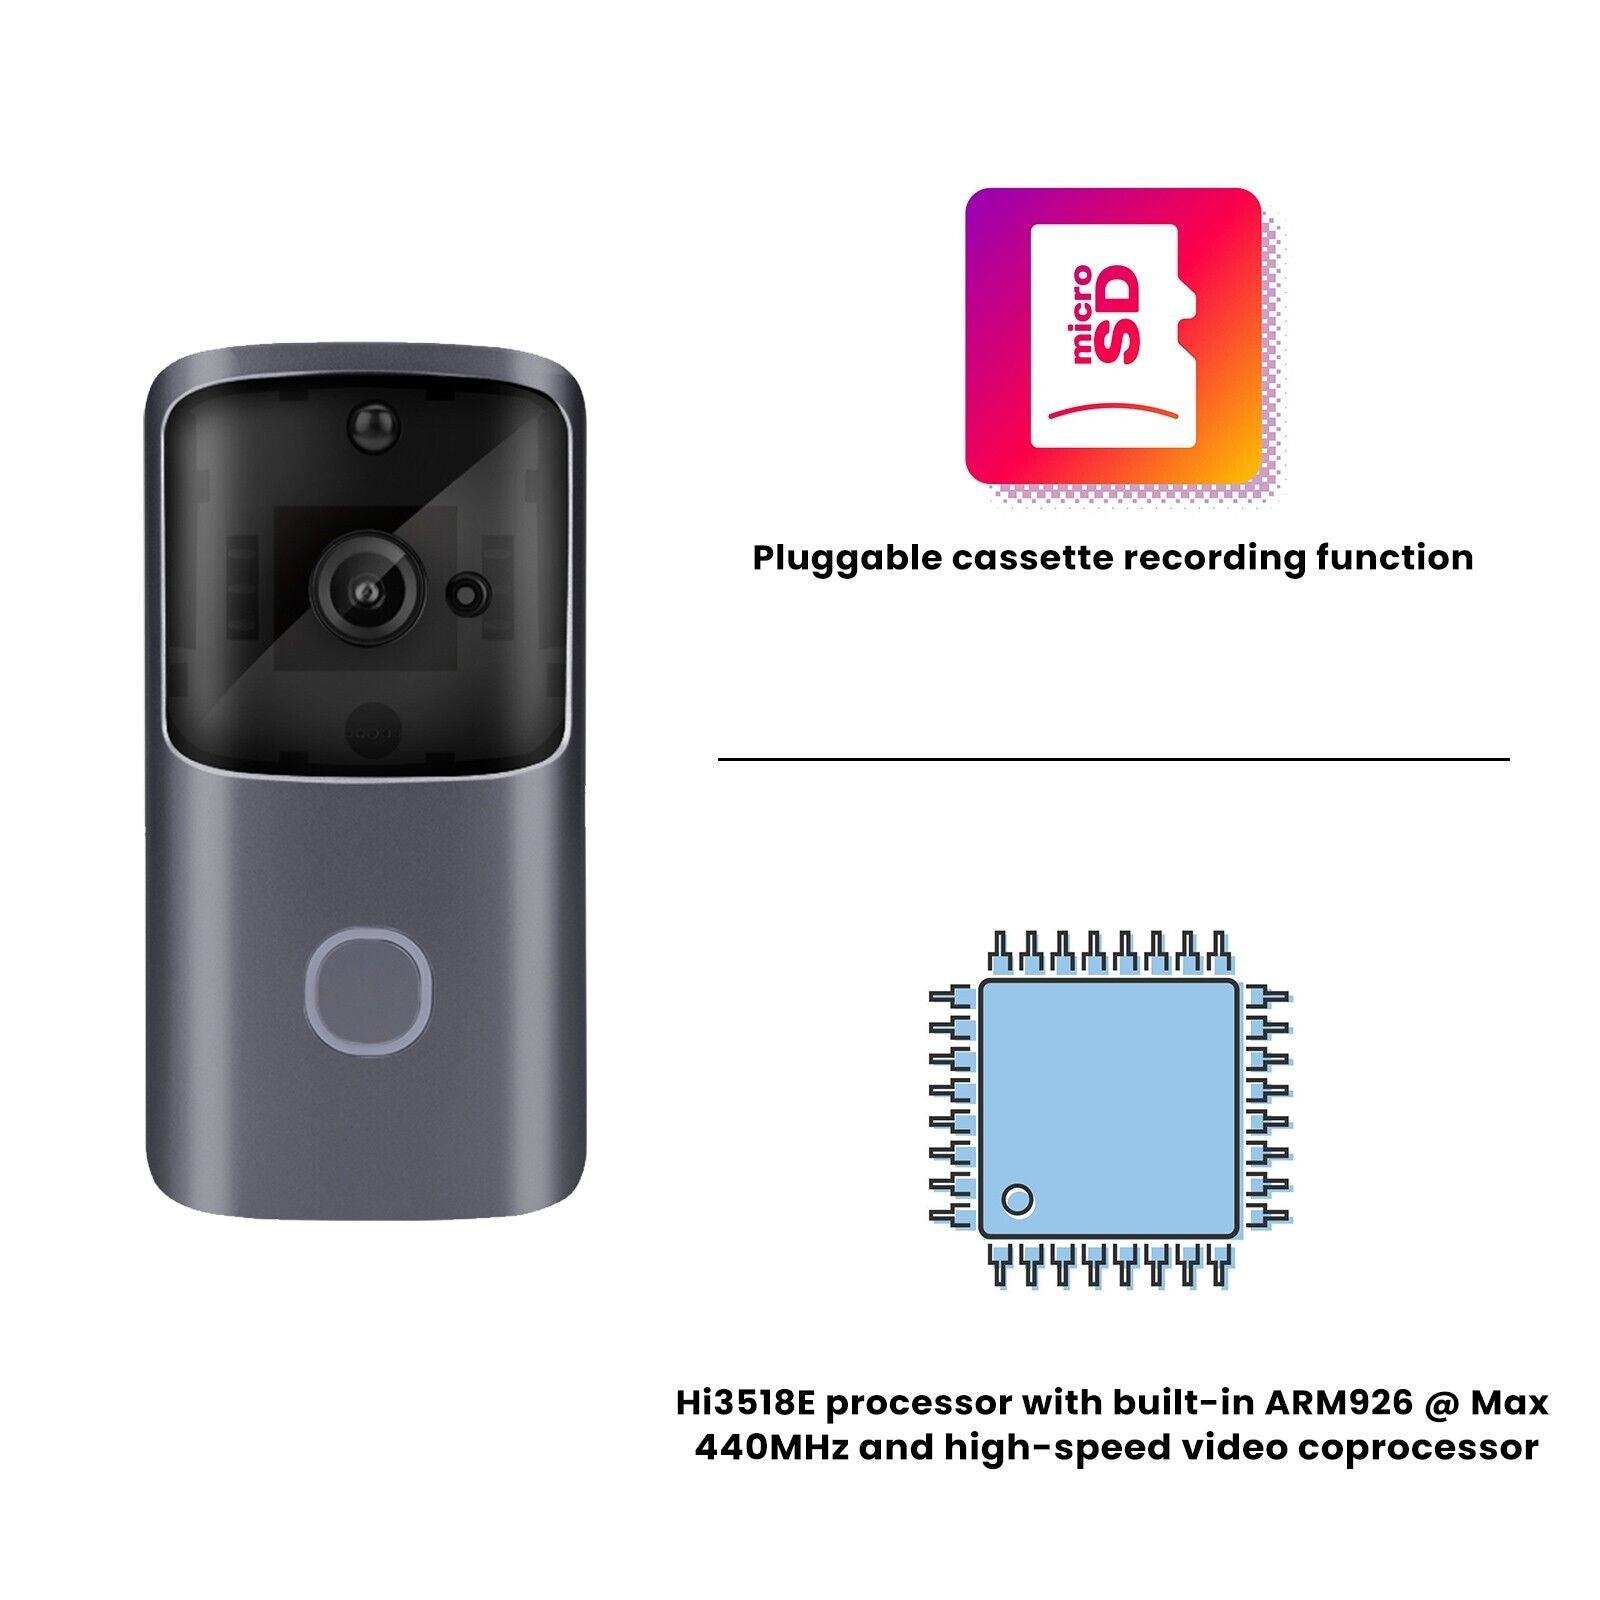 Wireless WiFi Video Doorbell Smart Phone Camera Door Bell Ring Intercom Security